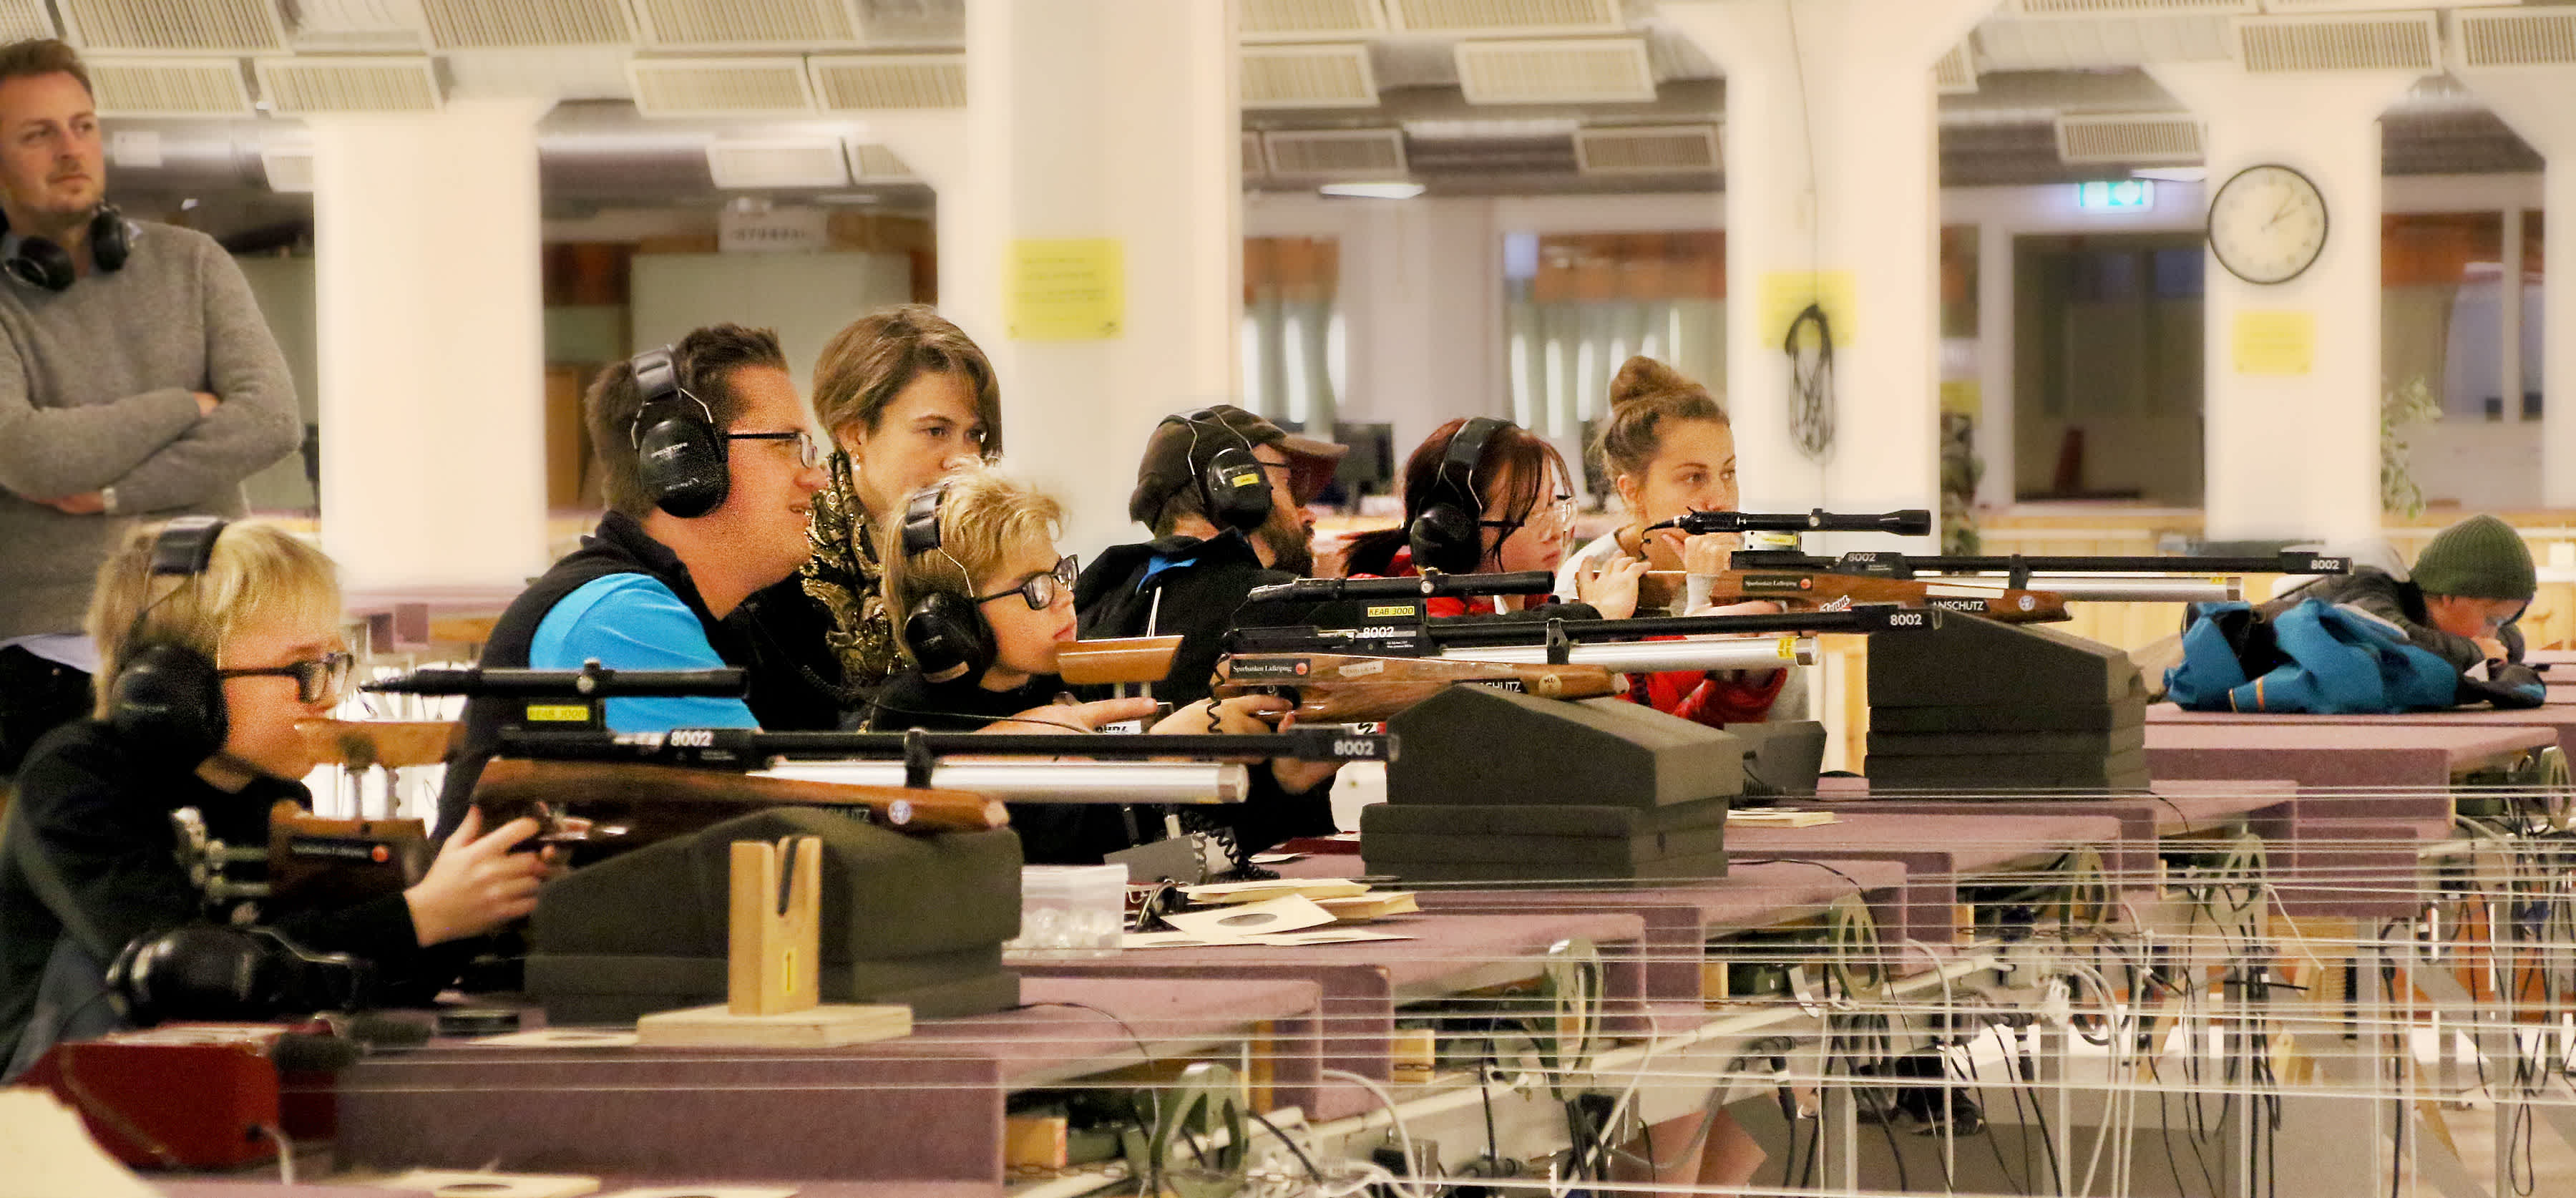 En grupp människor sitter på rad och siktar med elektroniska gevär. De har hörselkåpor över öronen.